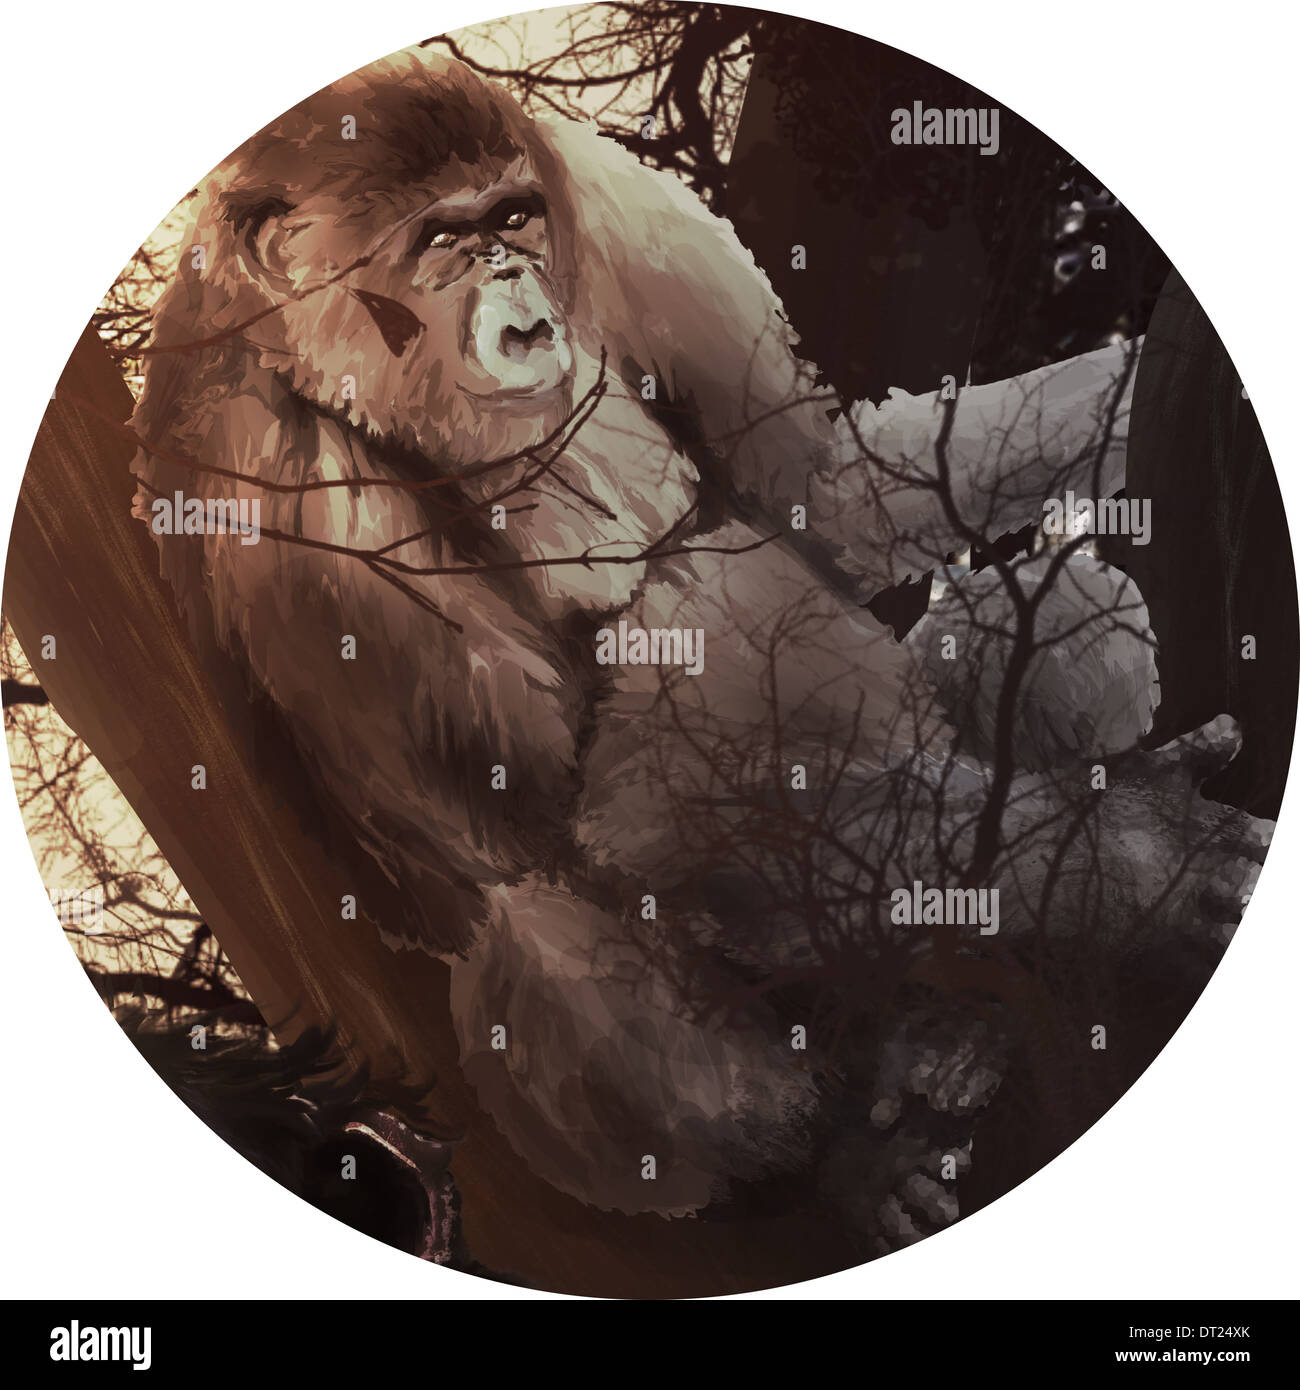 Illustration de chimpanzé dans forest against white background Banque D'Images